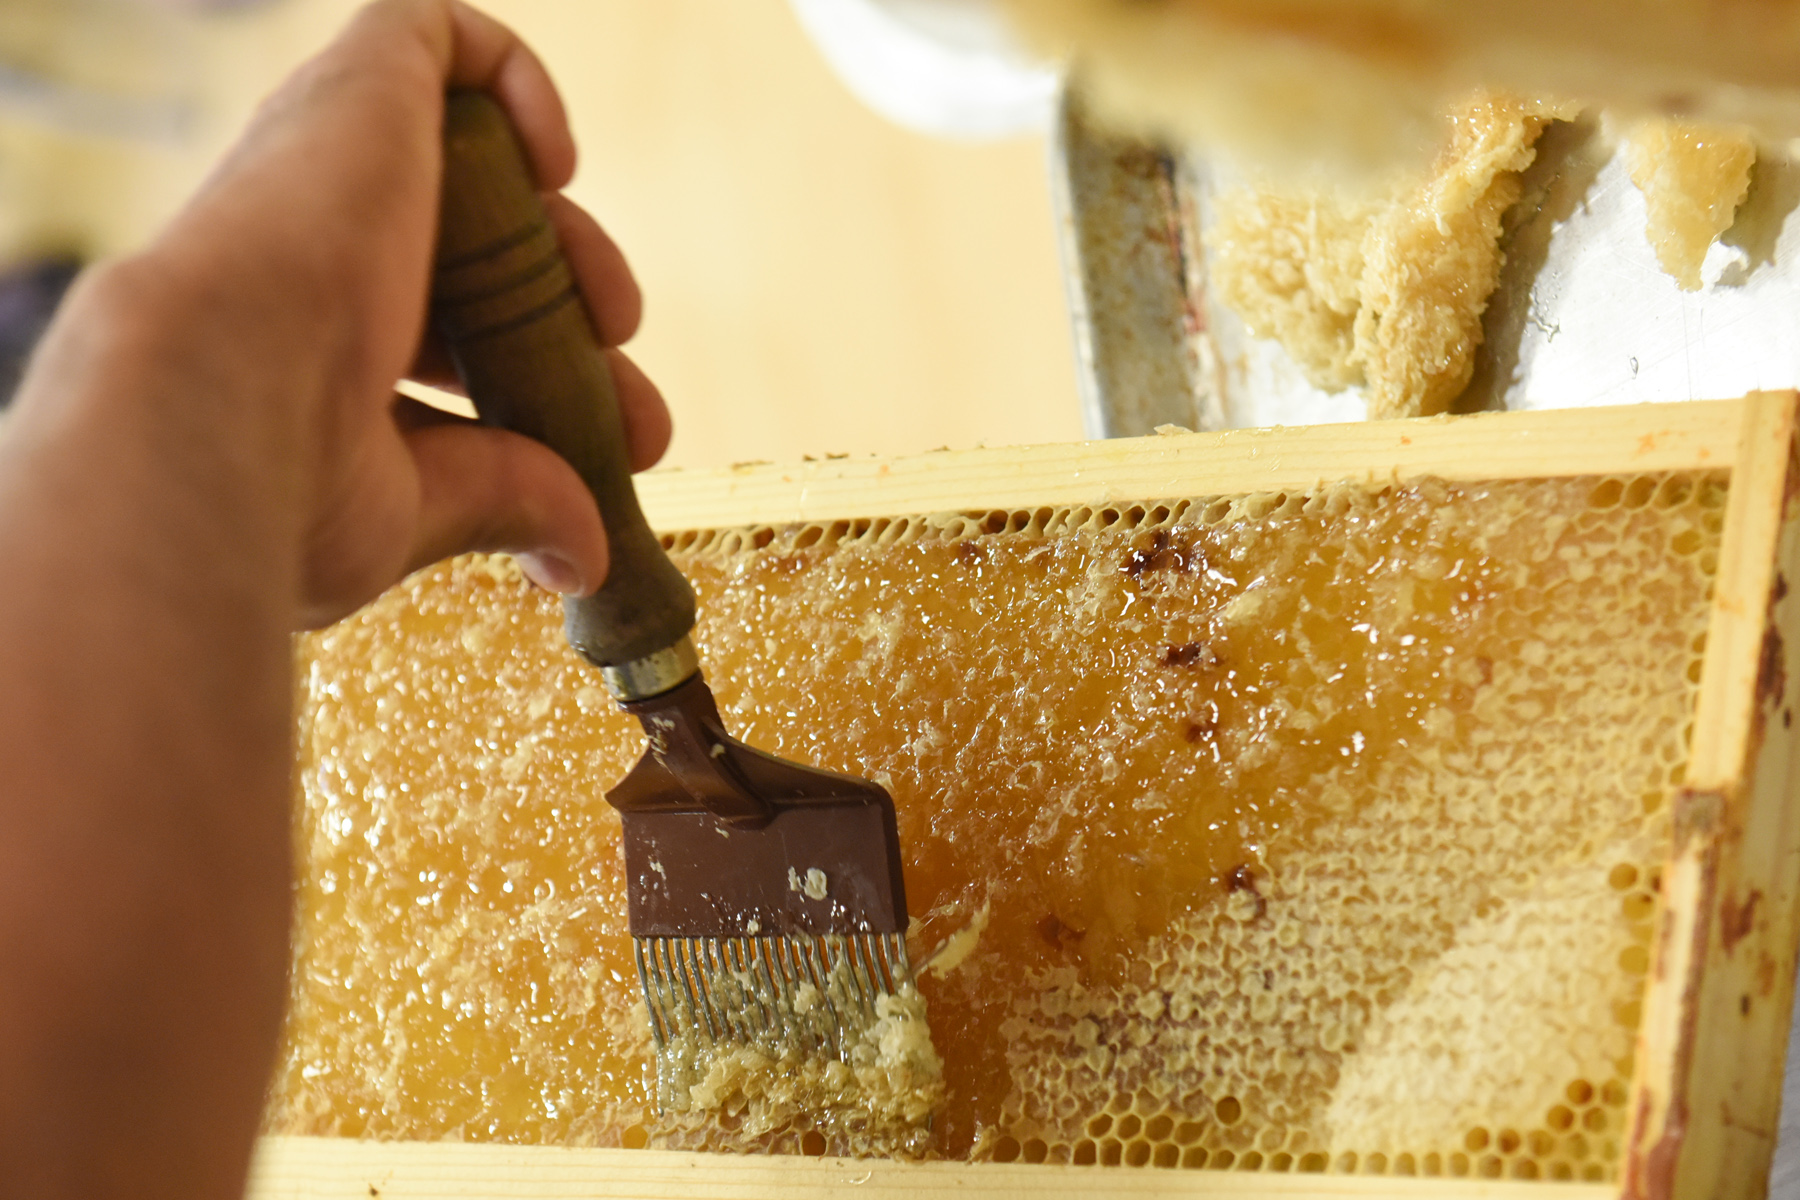 Valley's honeybee hives